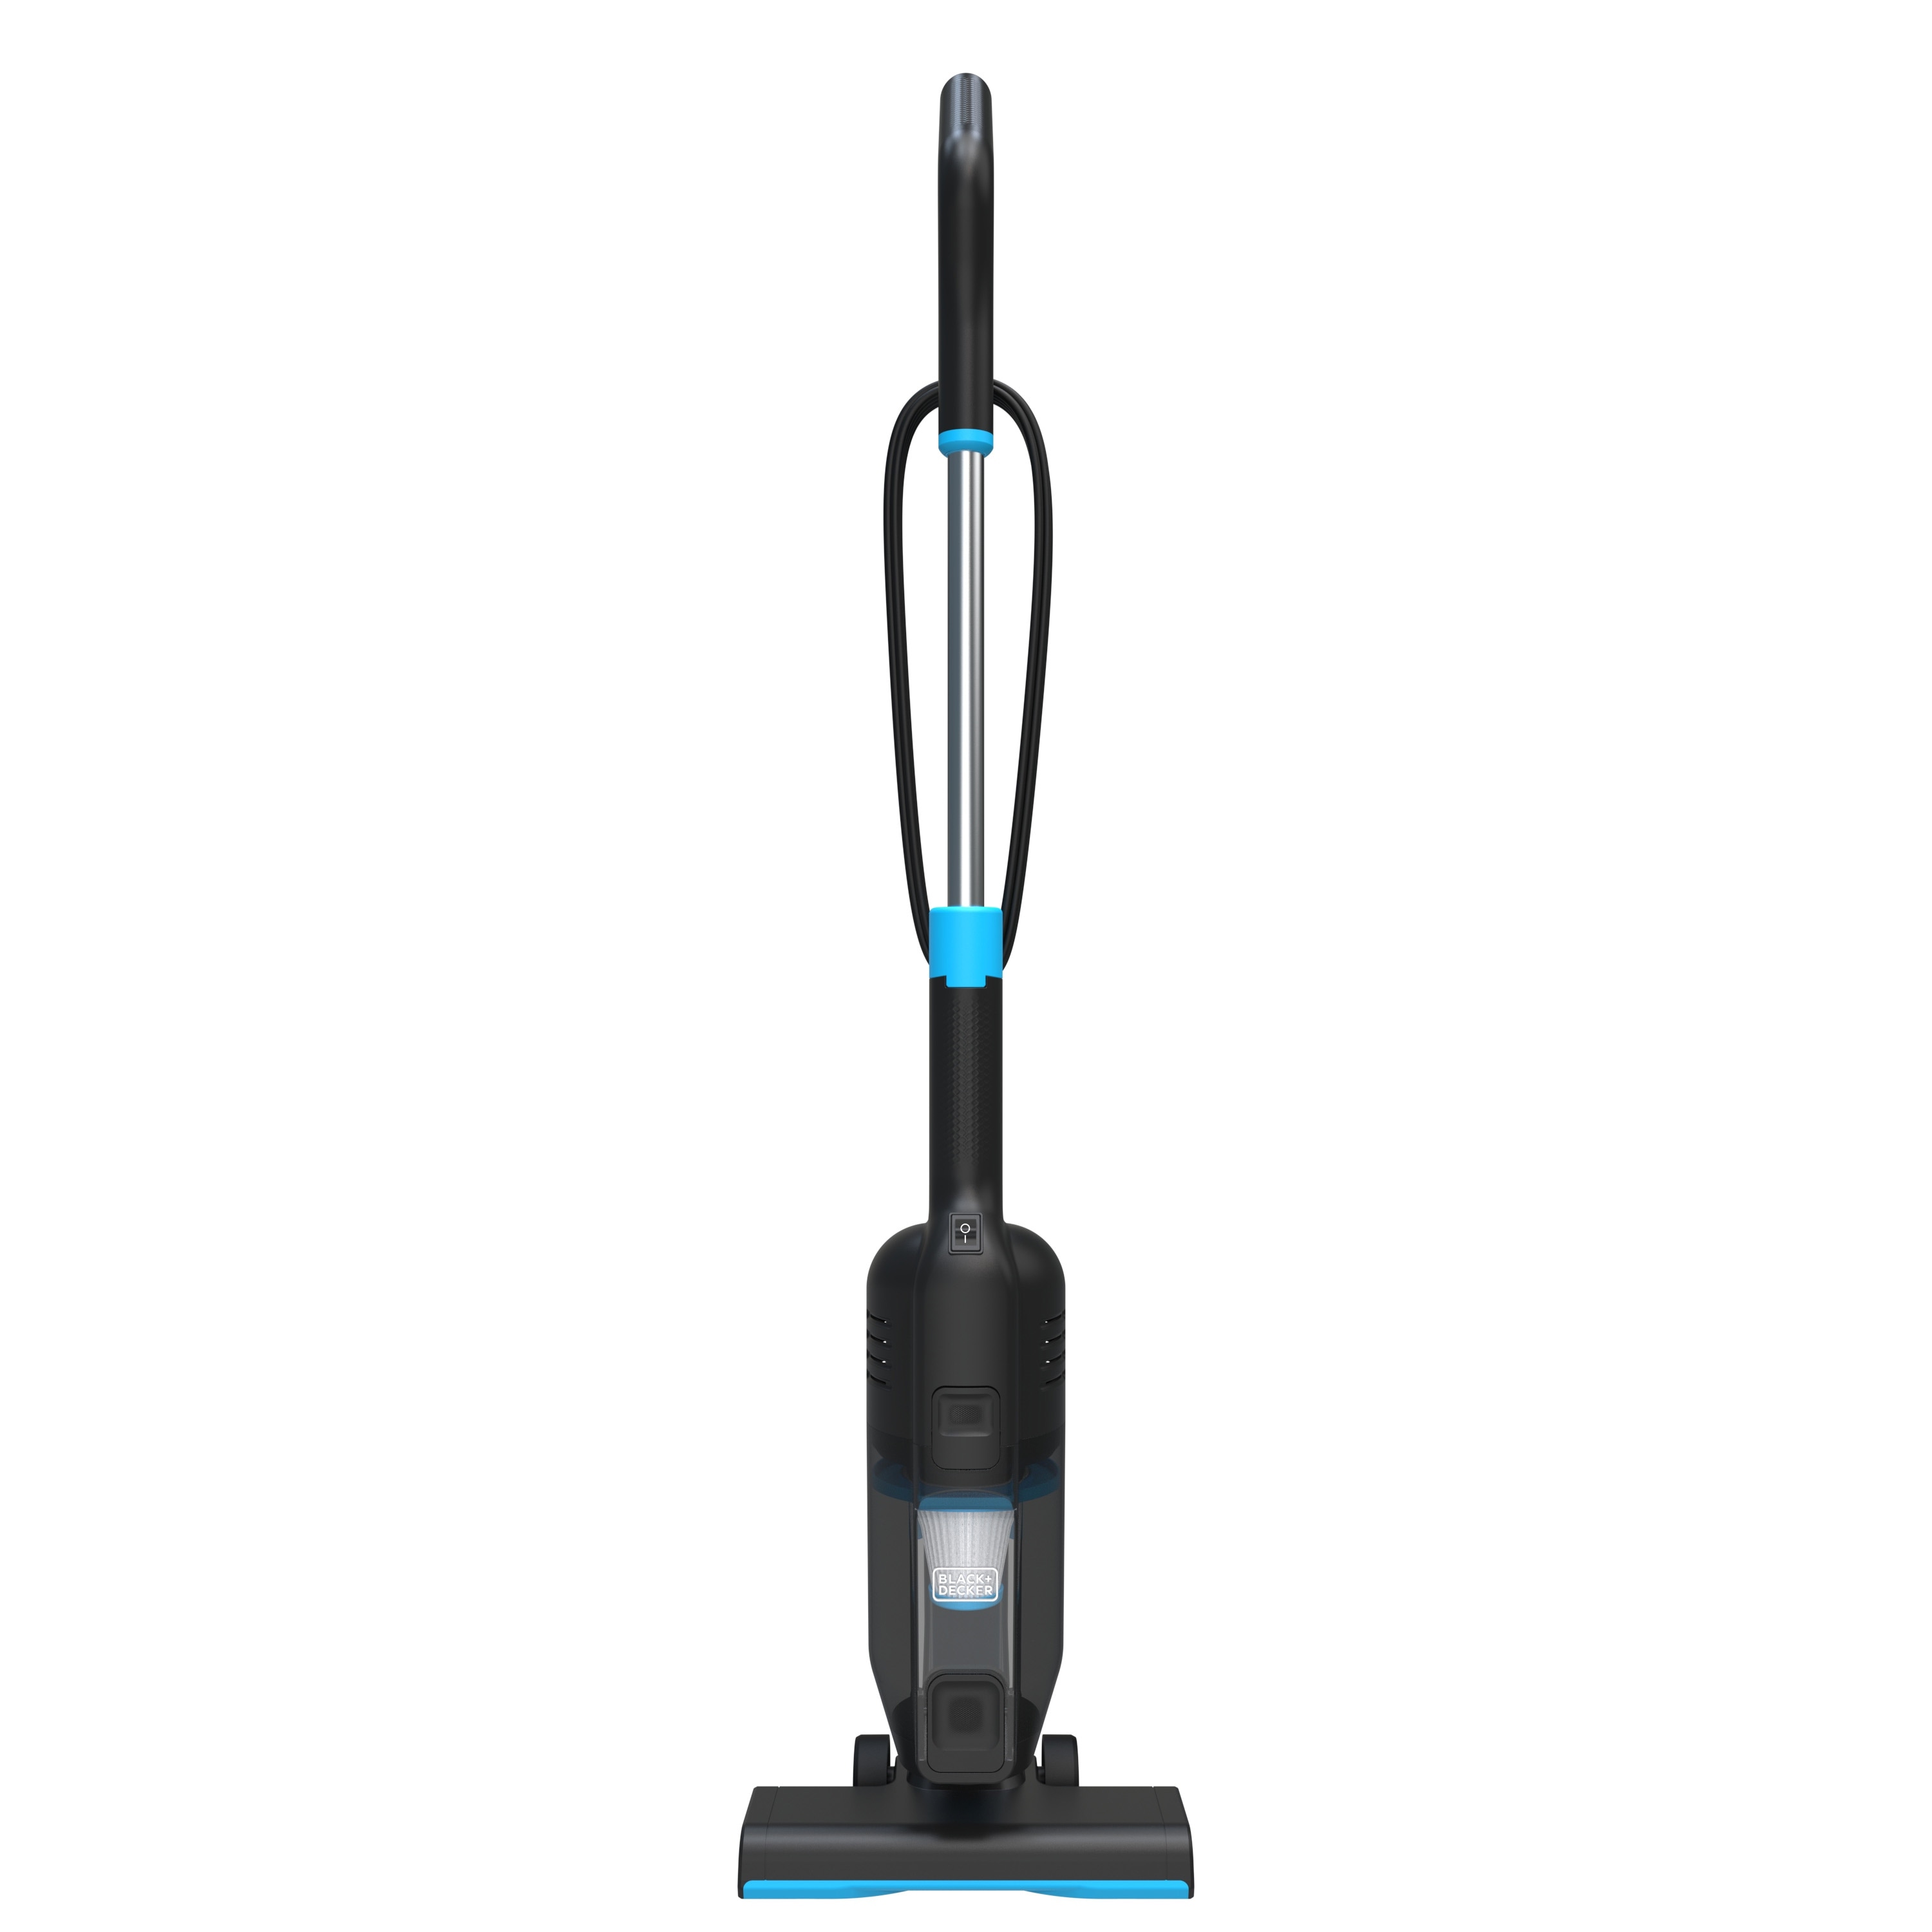 Black + Decker PowerSeries Lite 3-in-1 Corded Stick Vacuum